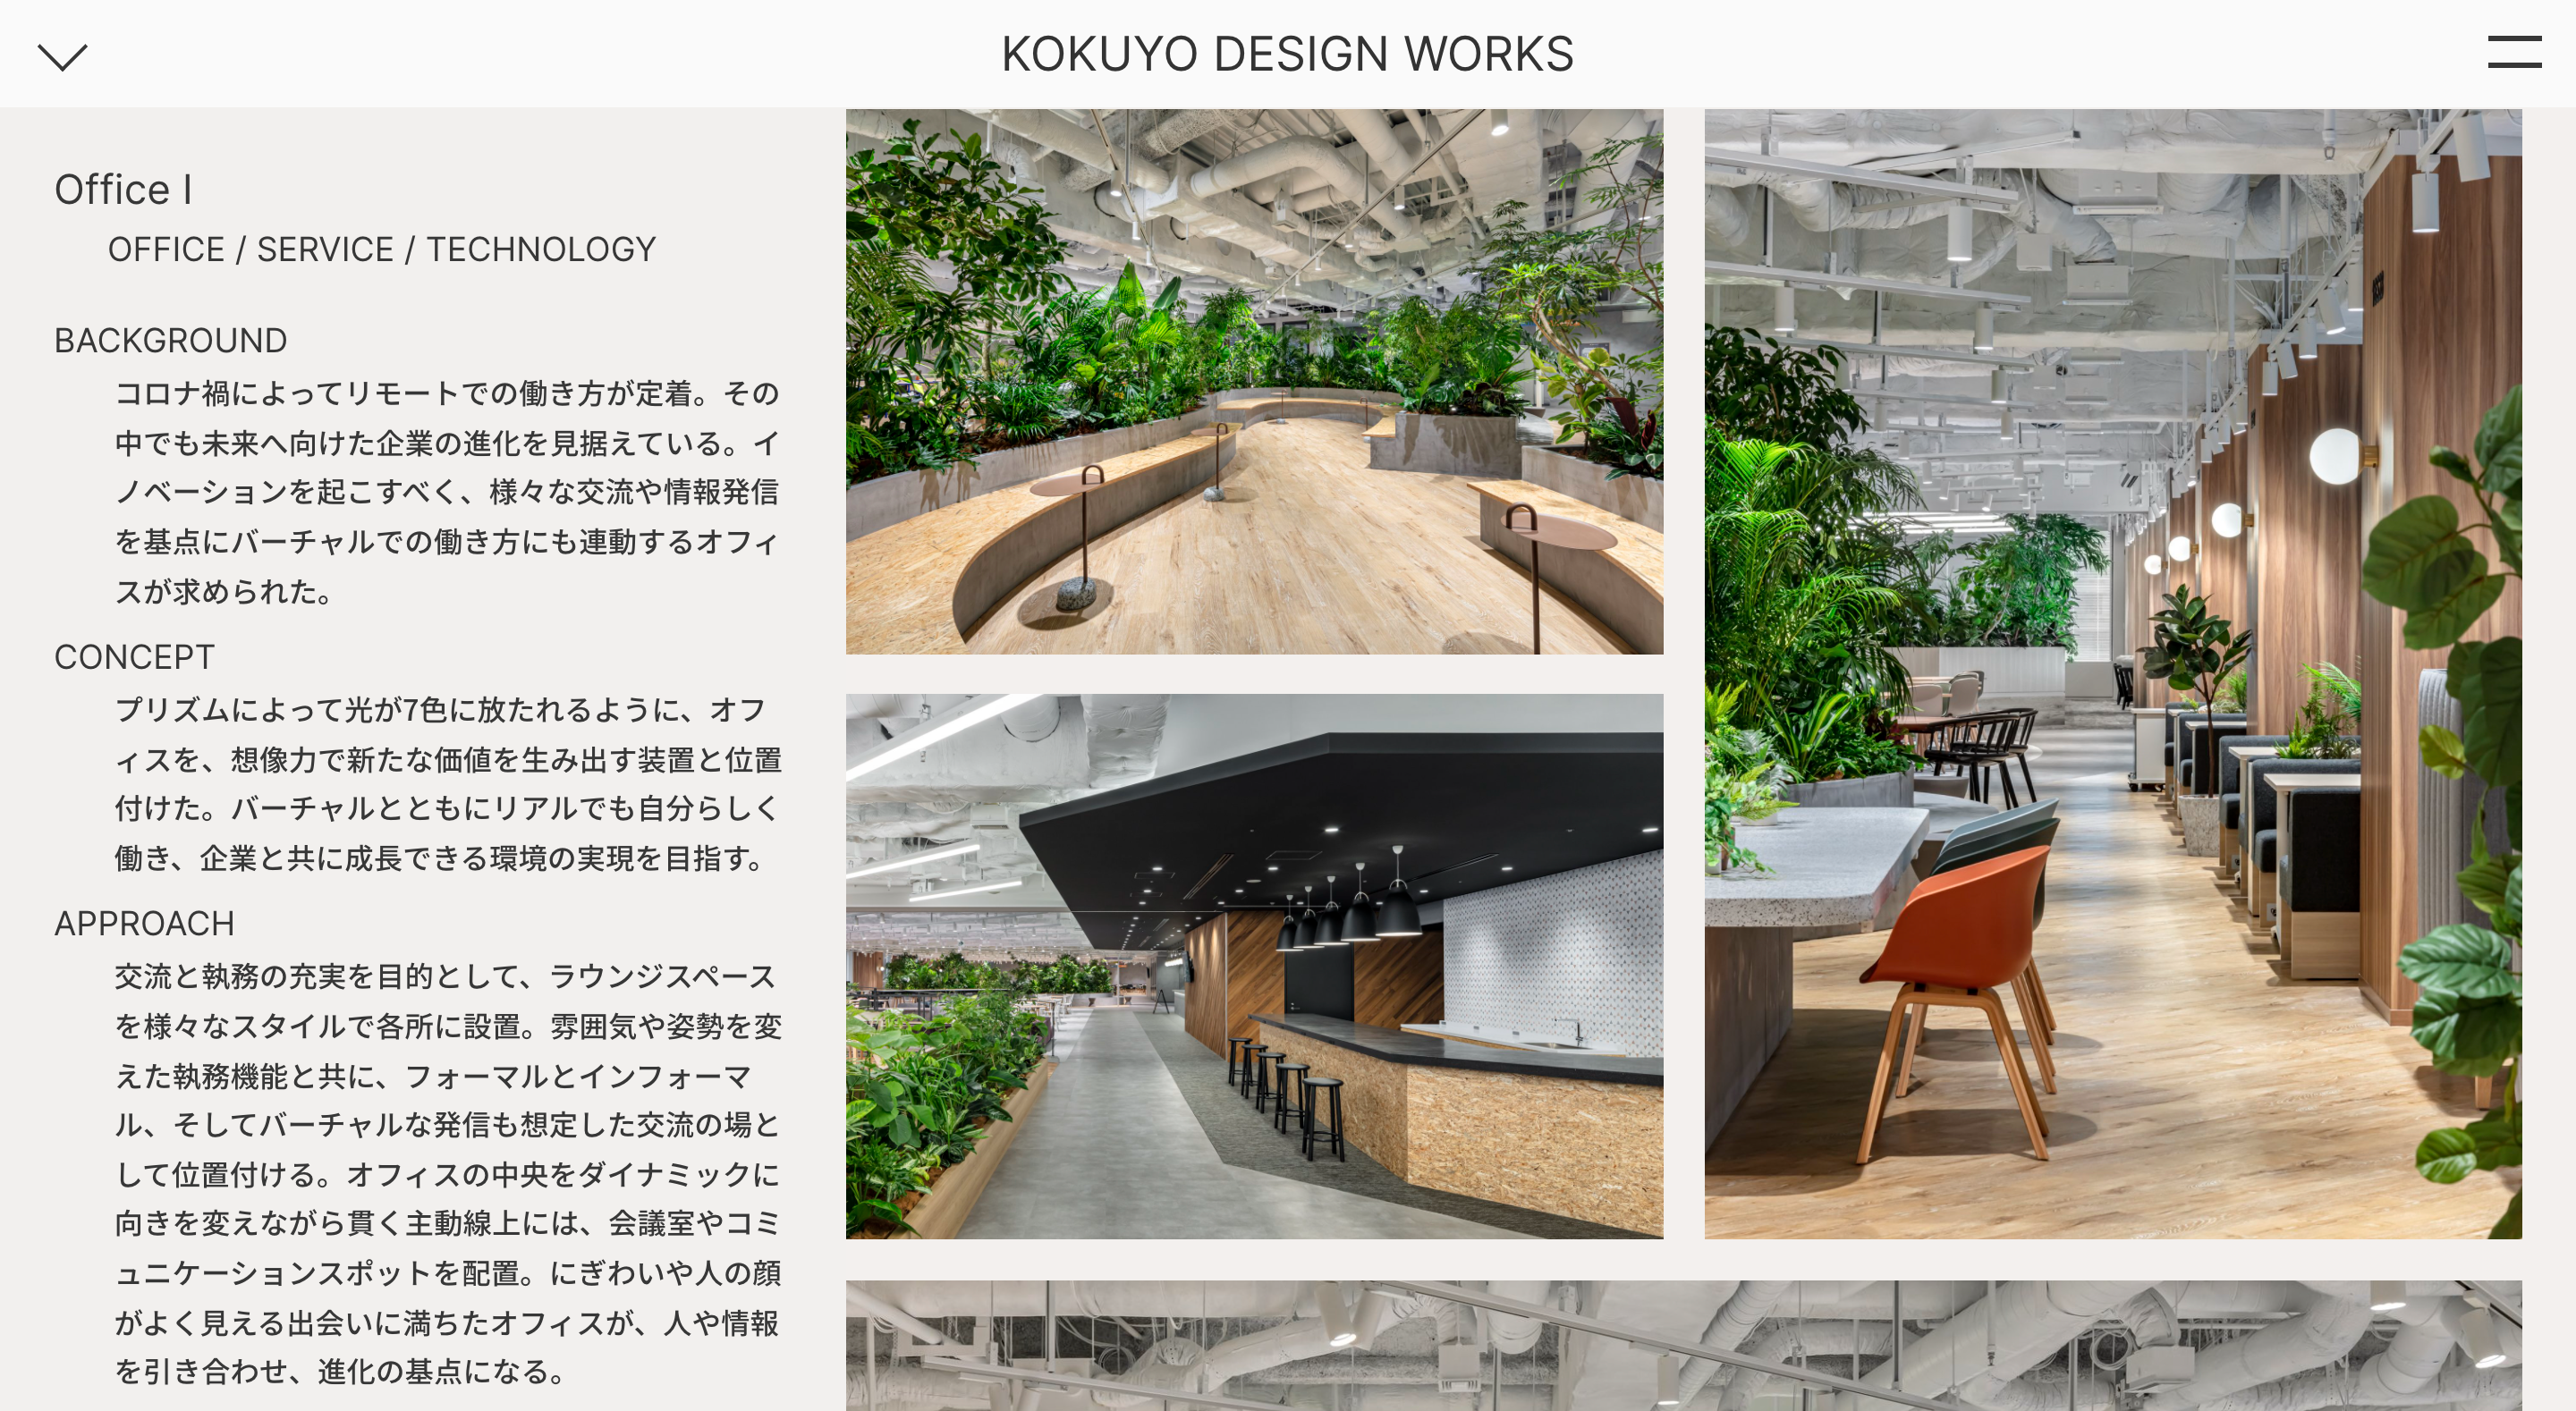 KOKUYO DESIGN WORKS 02